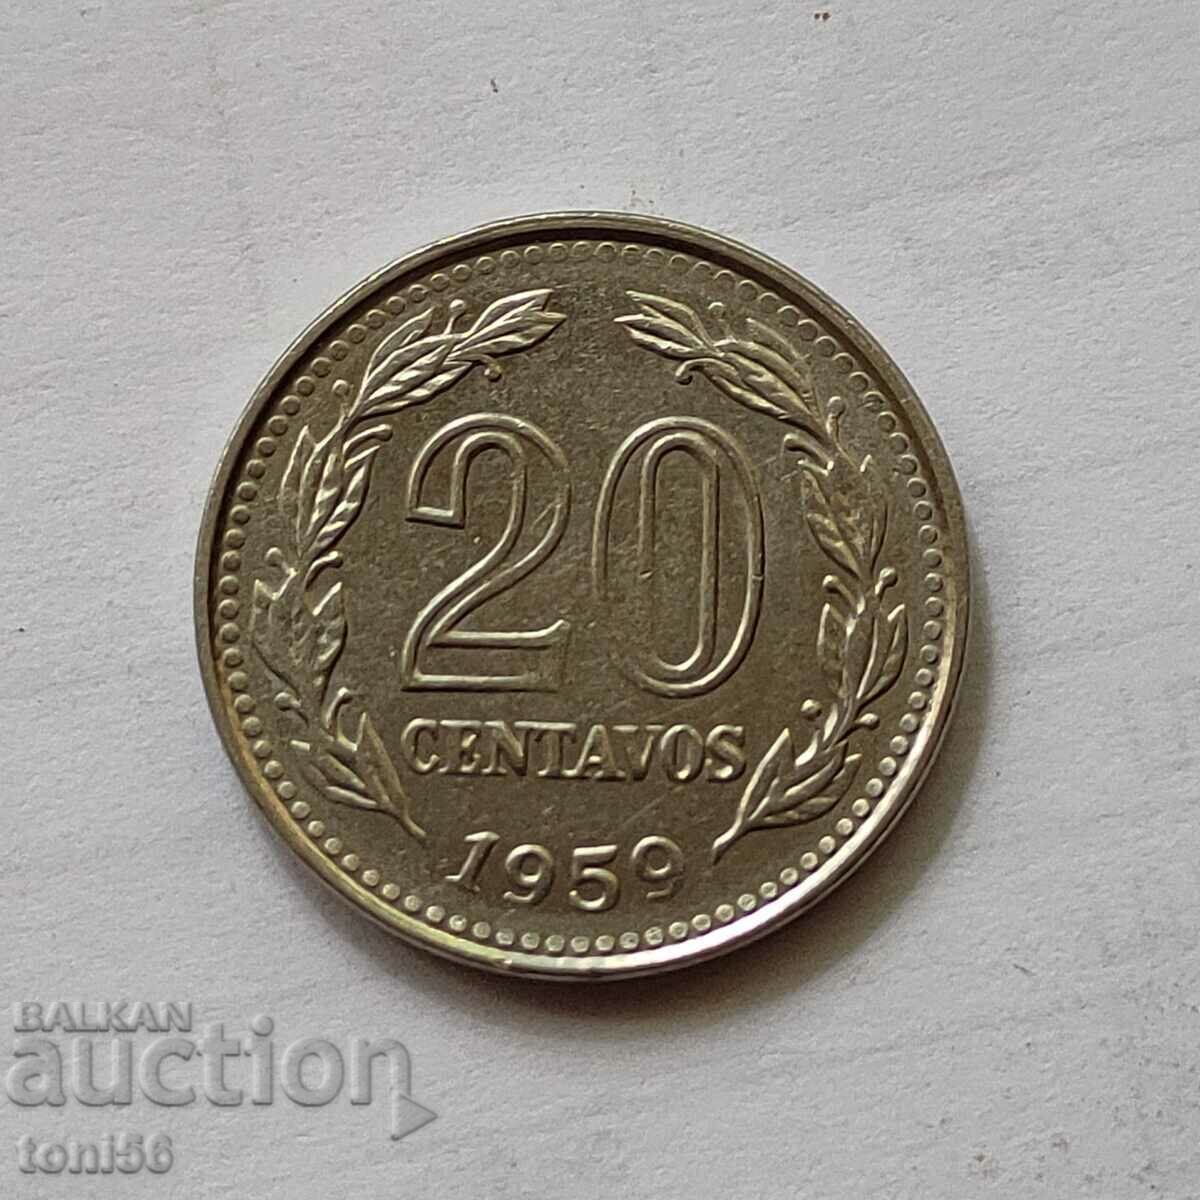 Argentina 20 centavos 1959 aUNC